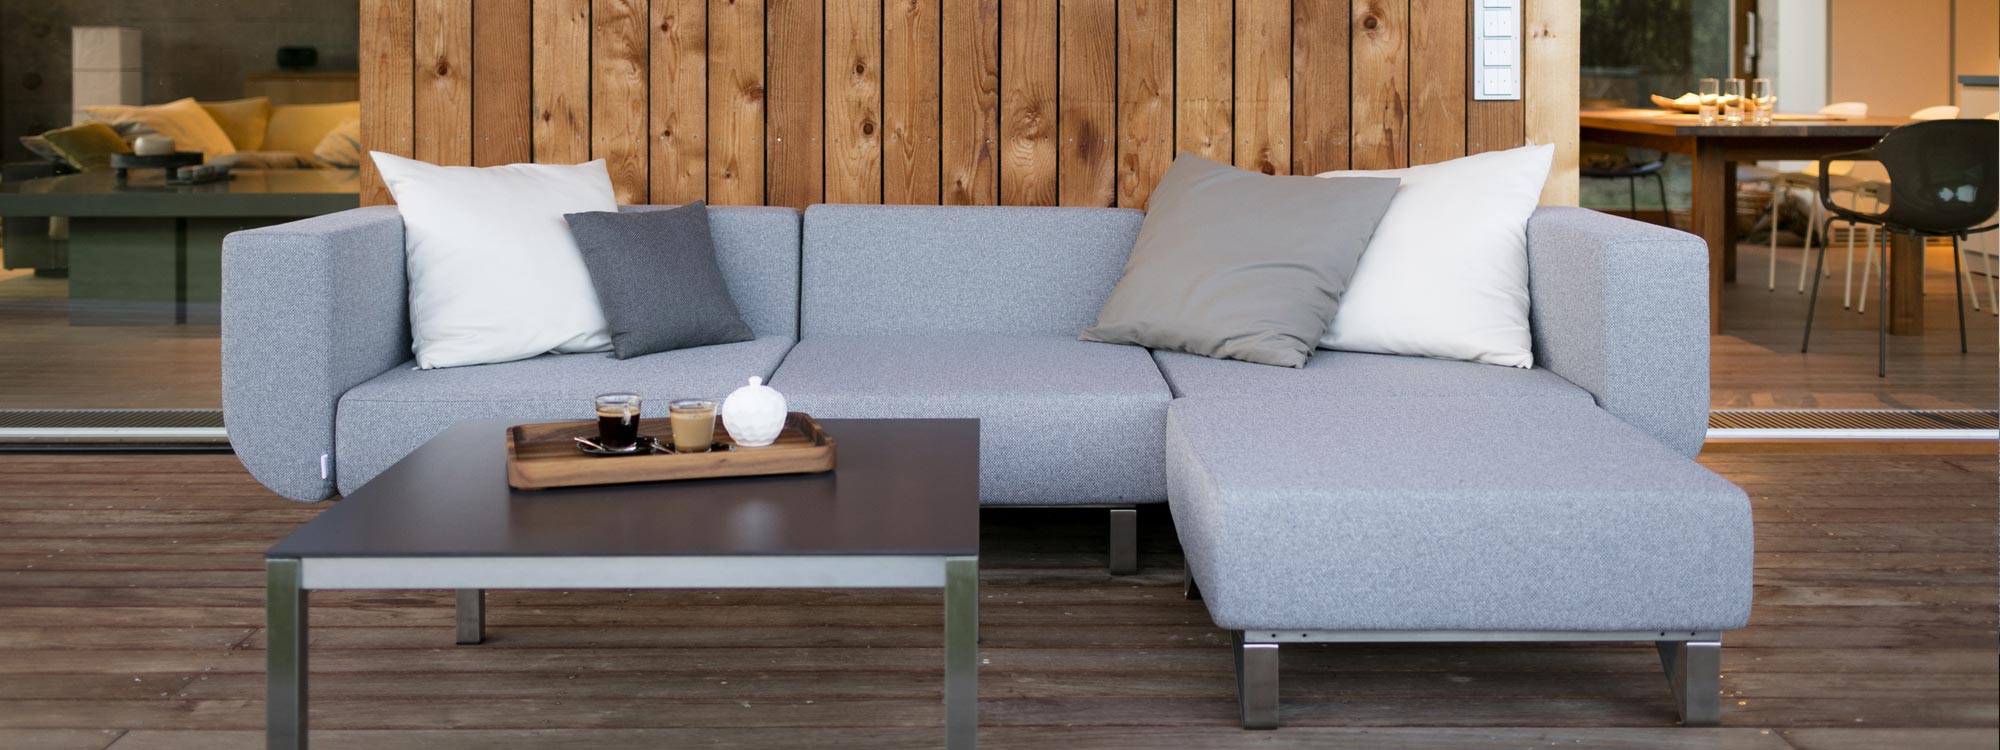 Lotos luxury garden sofa on wooden decking